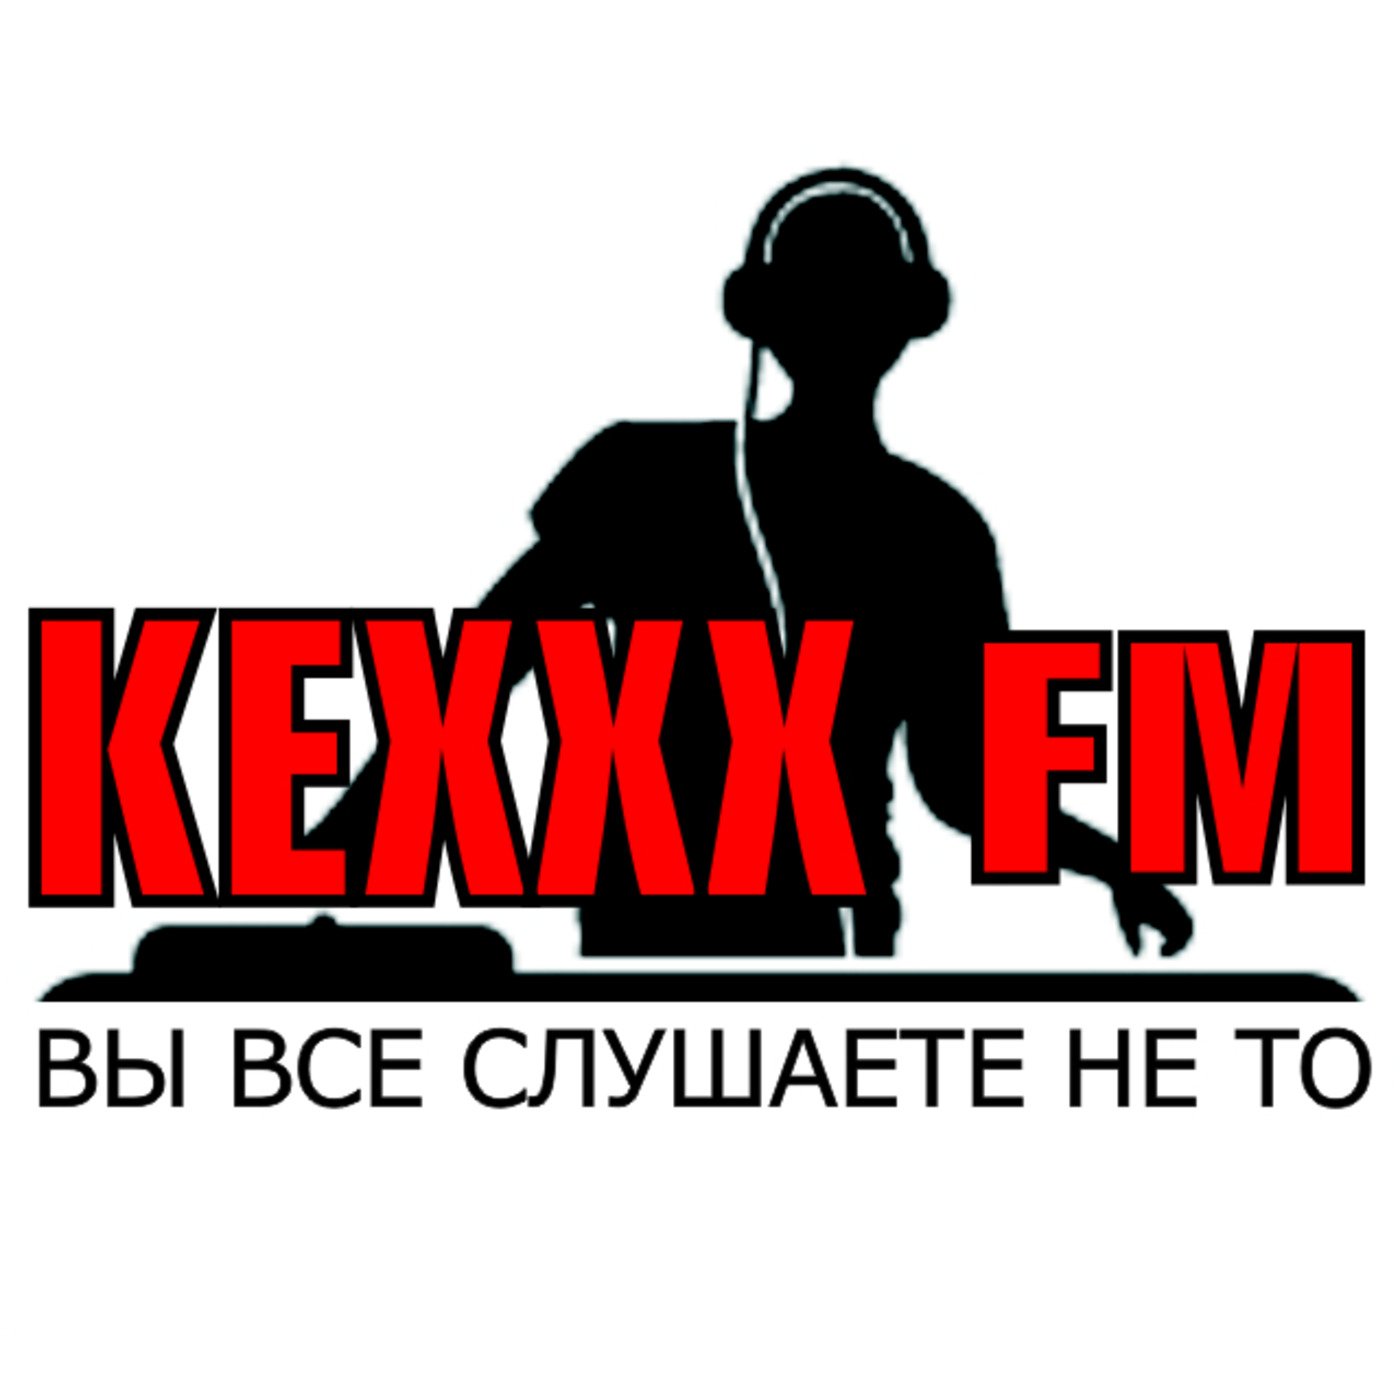 Live from SHERWOOD on KEXXX FM - dj Sergey Sher